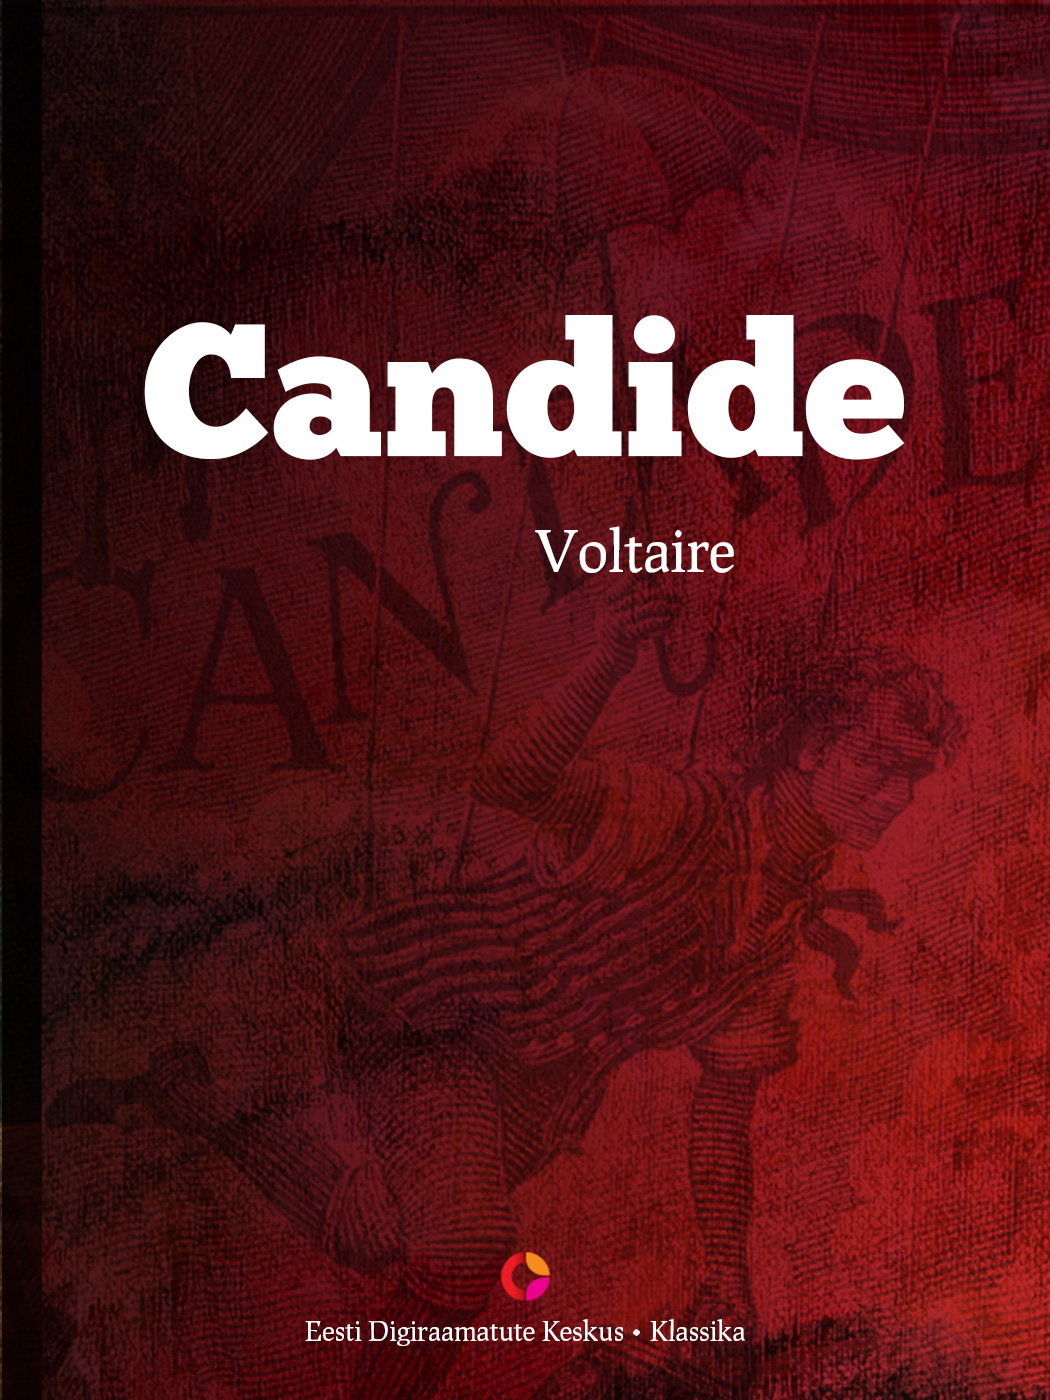 Книга Candide из серии , созданная  Voltaire, может относится к жанру Зарубежная классика, Зарубежная старинная литература. Стоимость электронной книги Candide с идентификатором 21183644 составляет 427.84 руб.